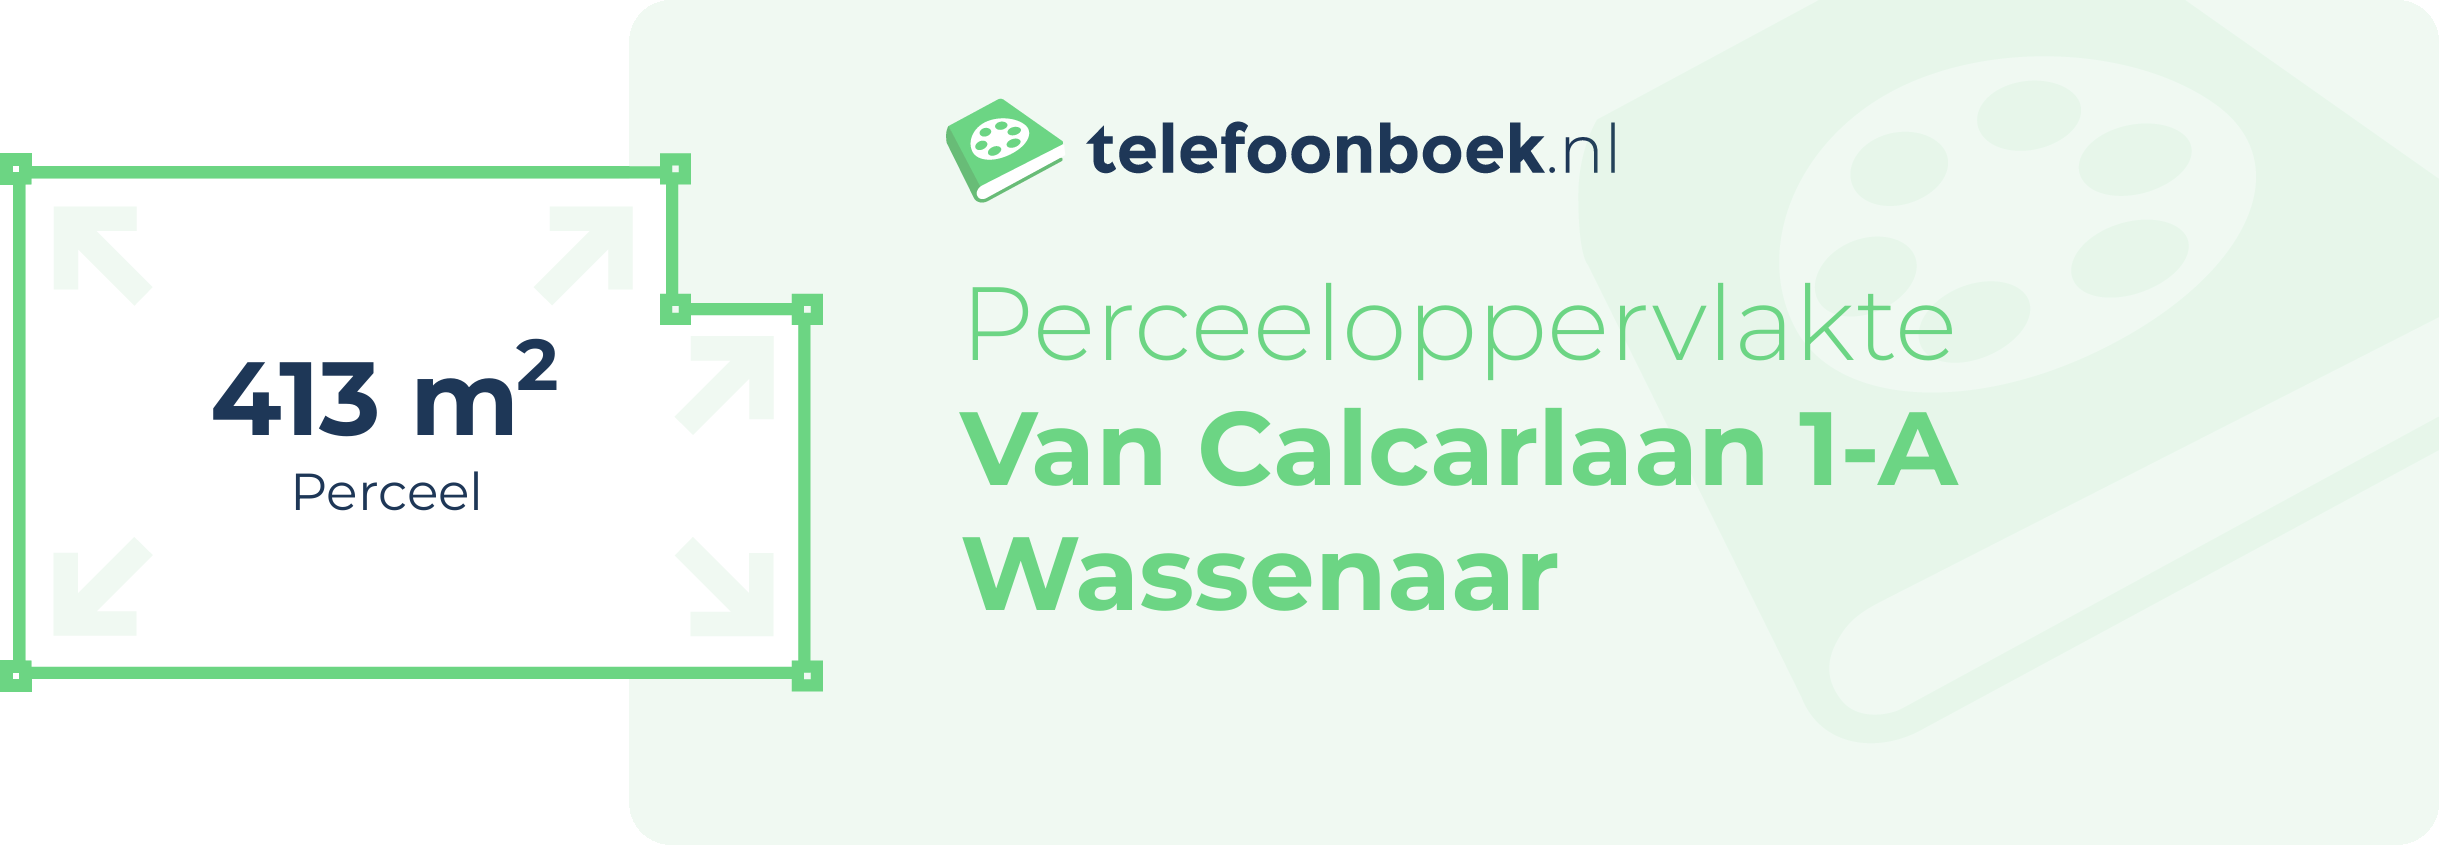 Perceeloppervlakte Van Calcarlaan 1-A Wassenaar